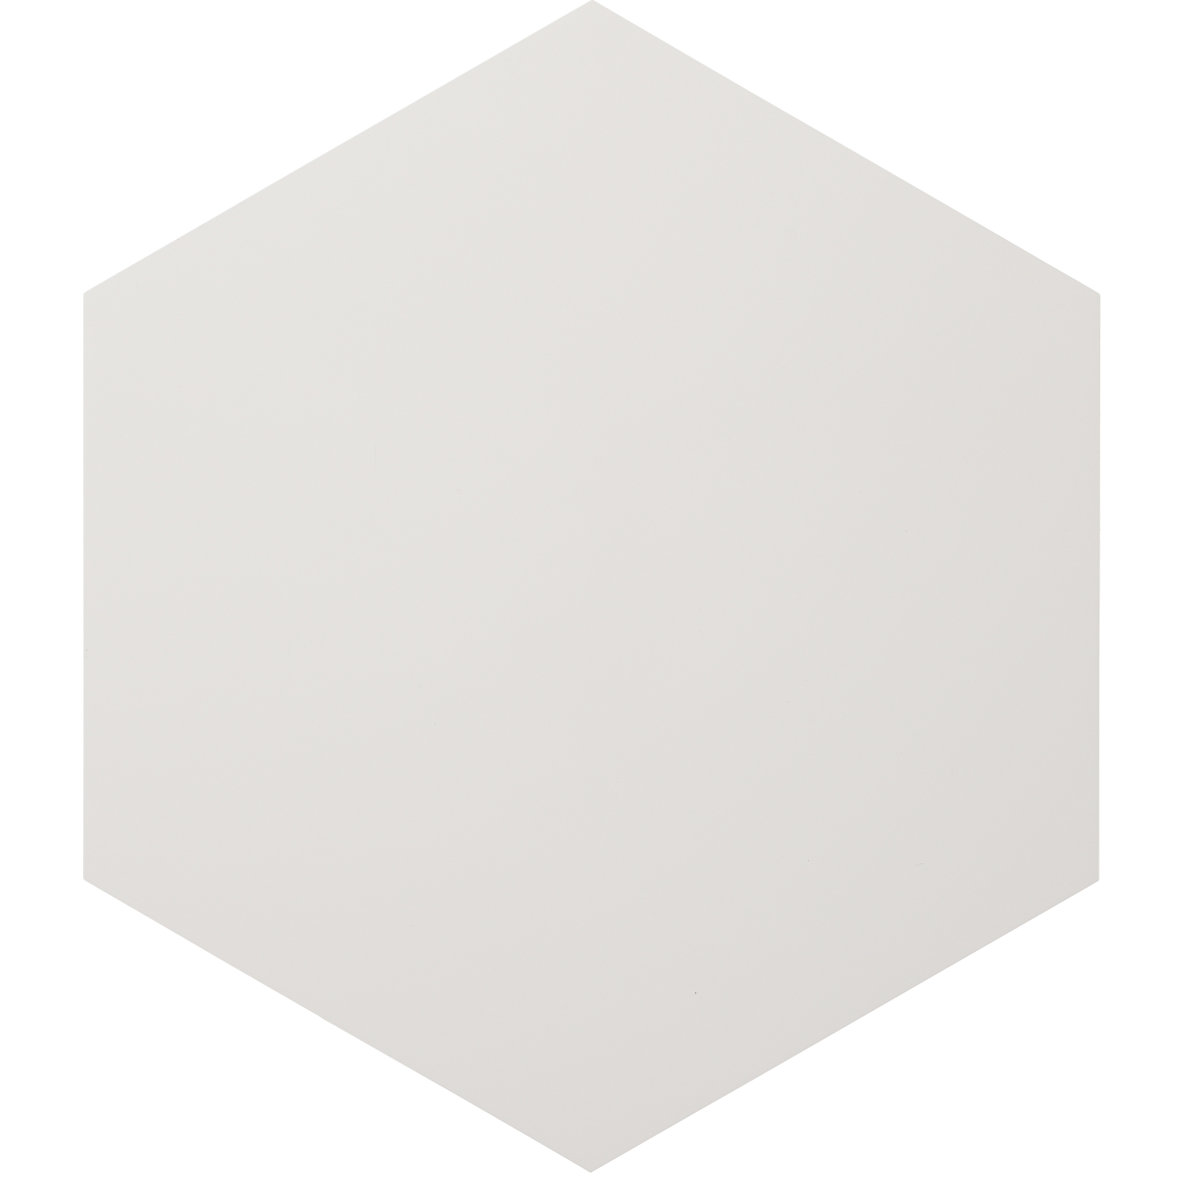 Dizajnová biela tabuľa – Chameleon